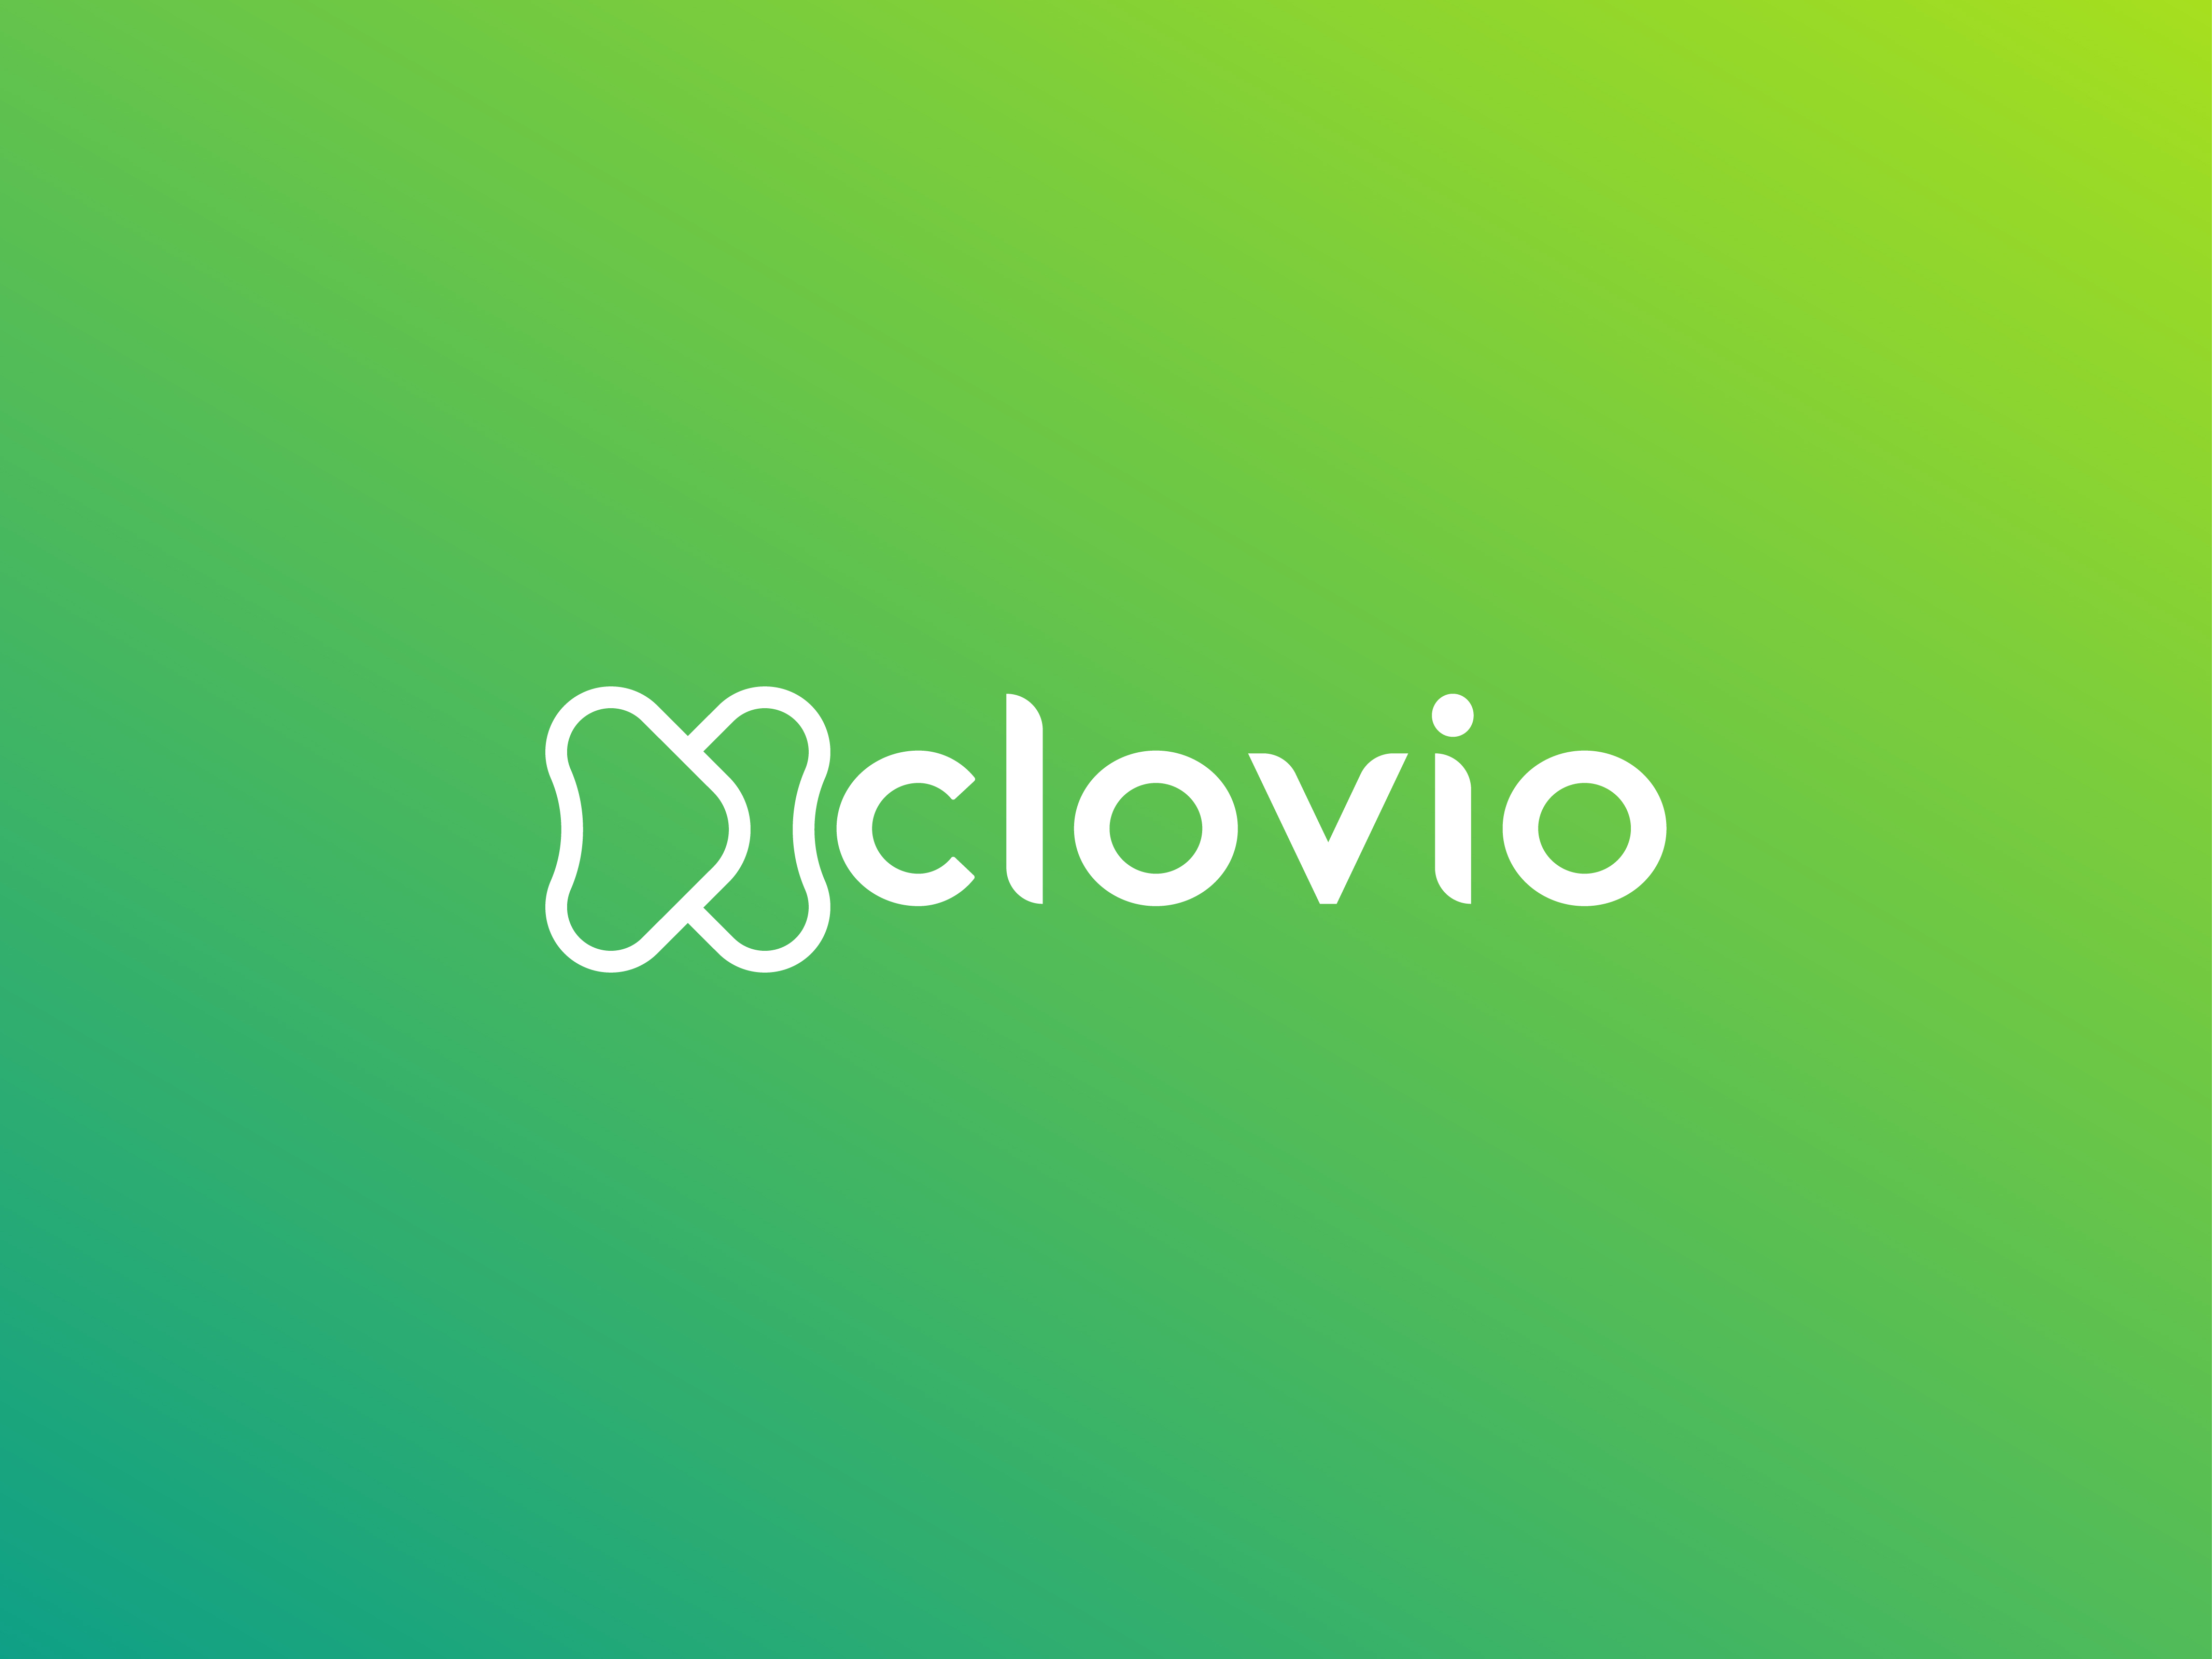 (c) Clovio.com